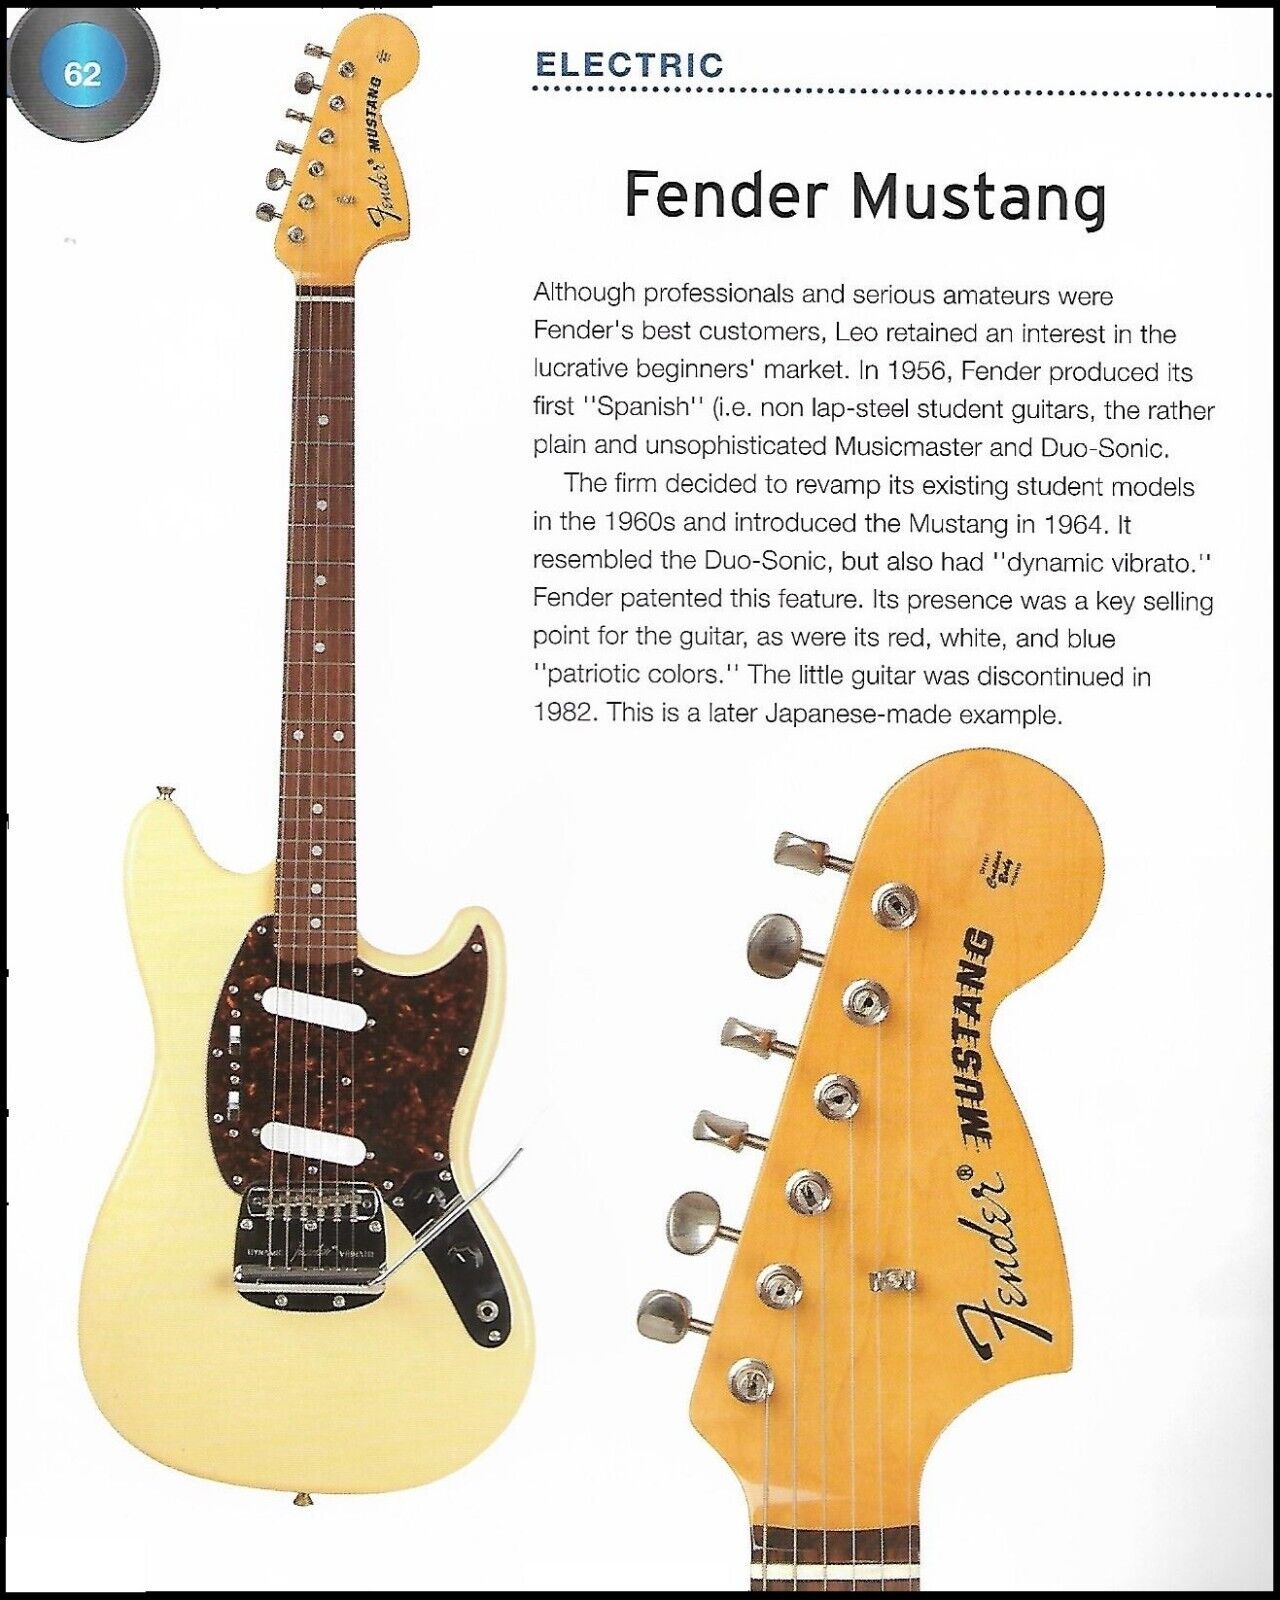 1964 Fender Mustang + Fender Jaguar electric guitar history article